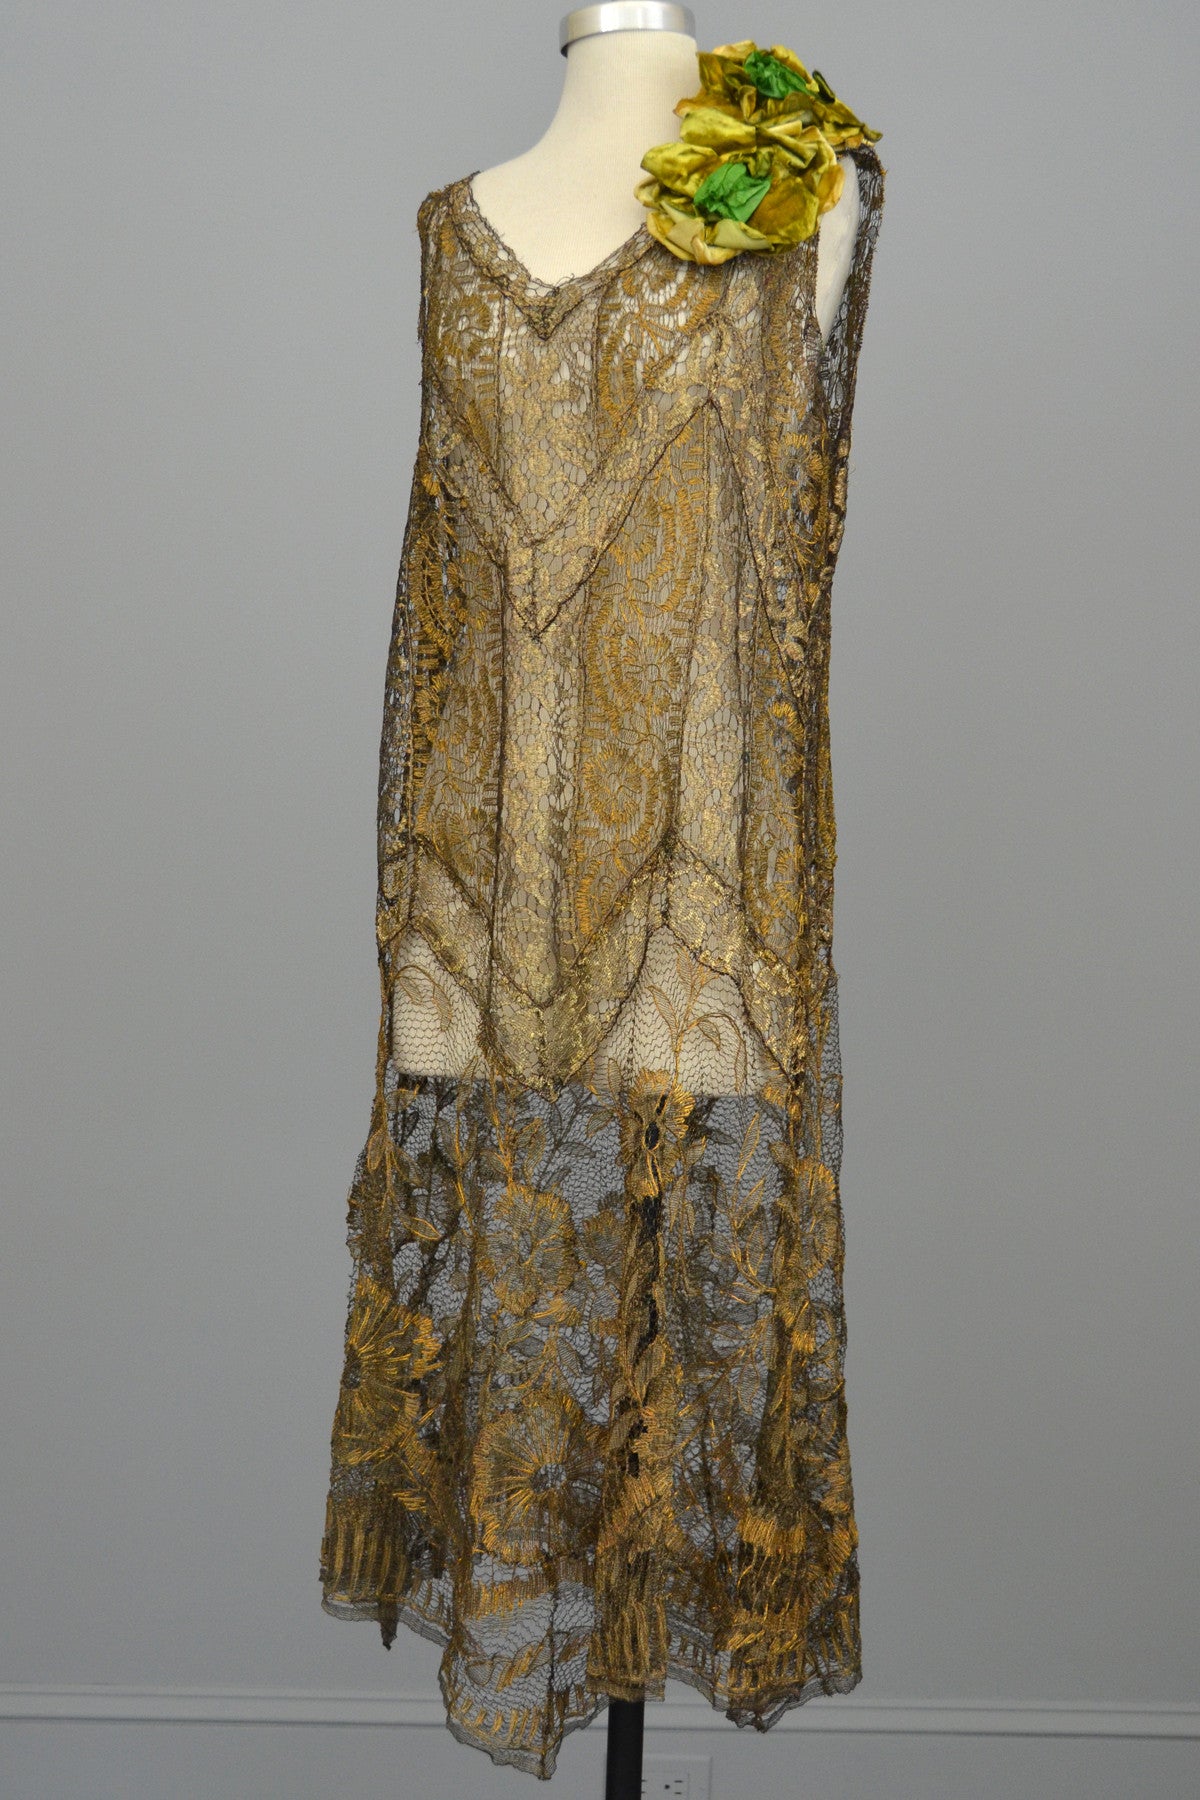 lace flapper dress